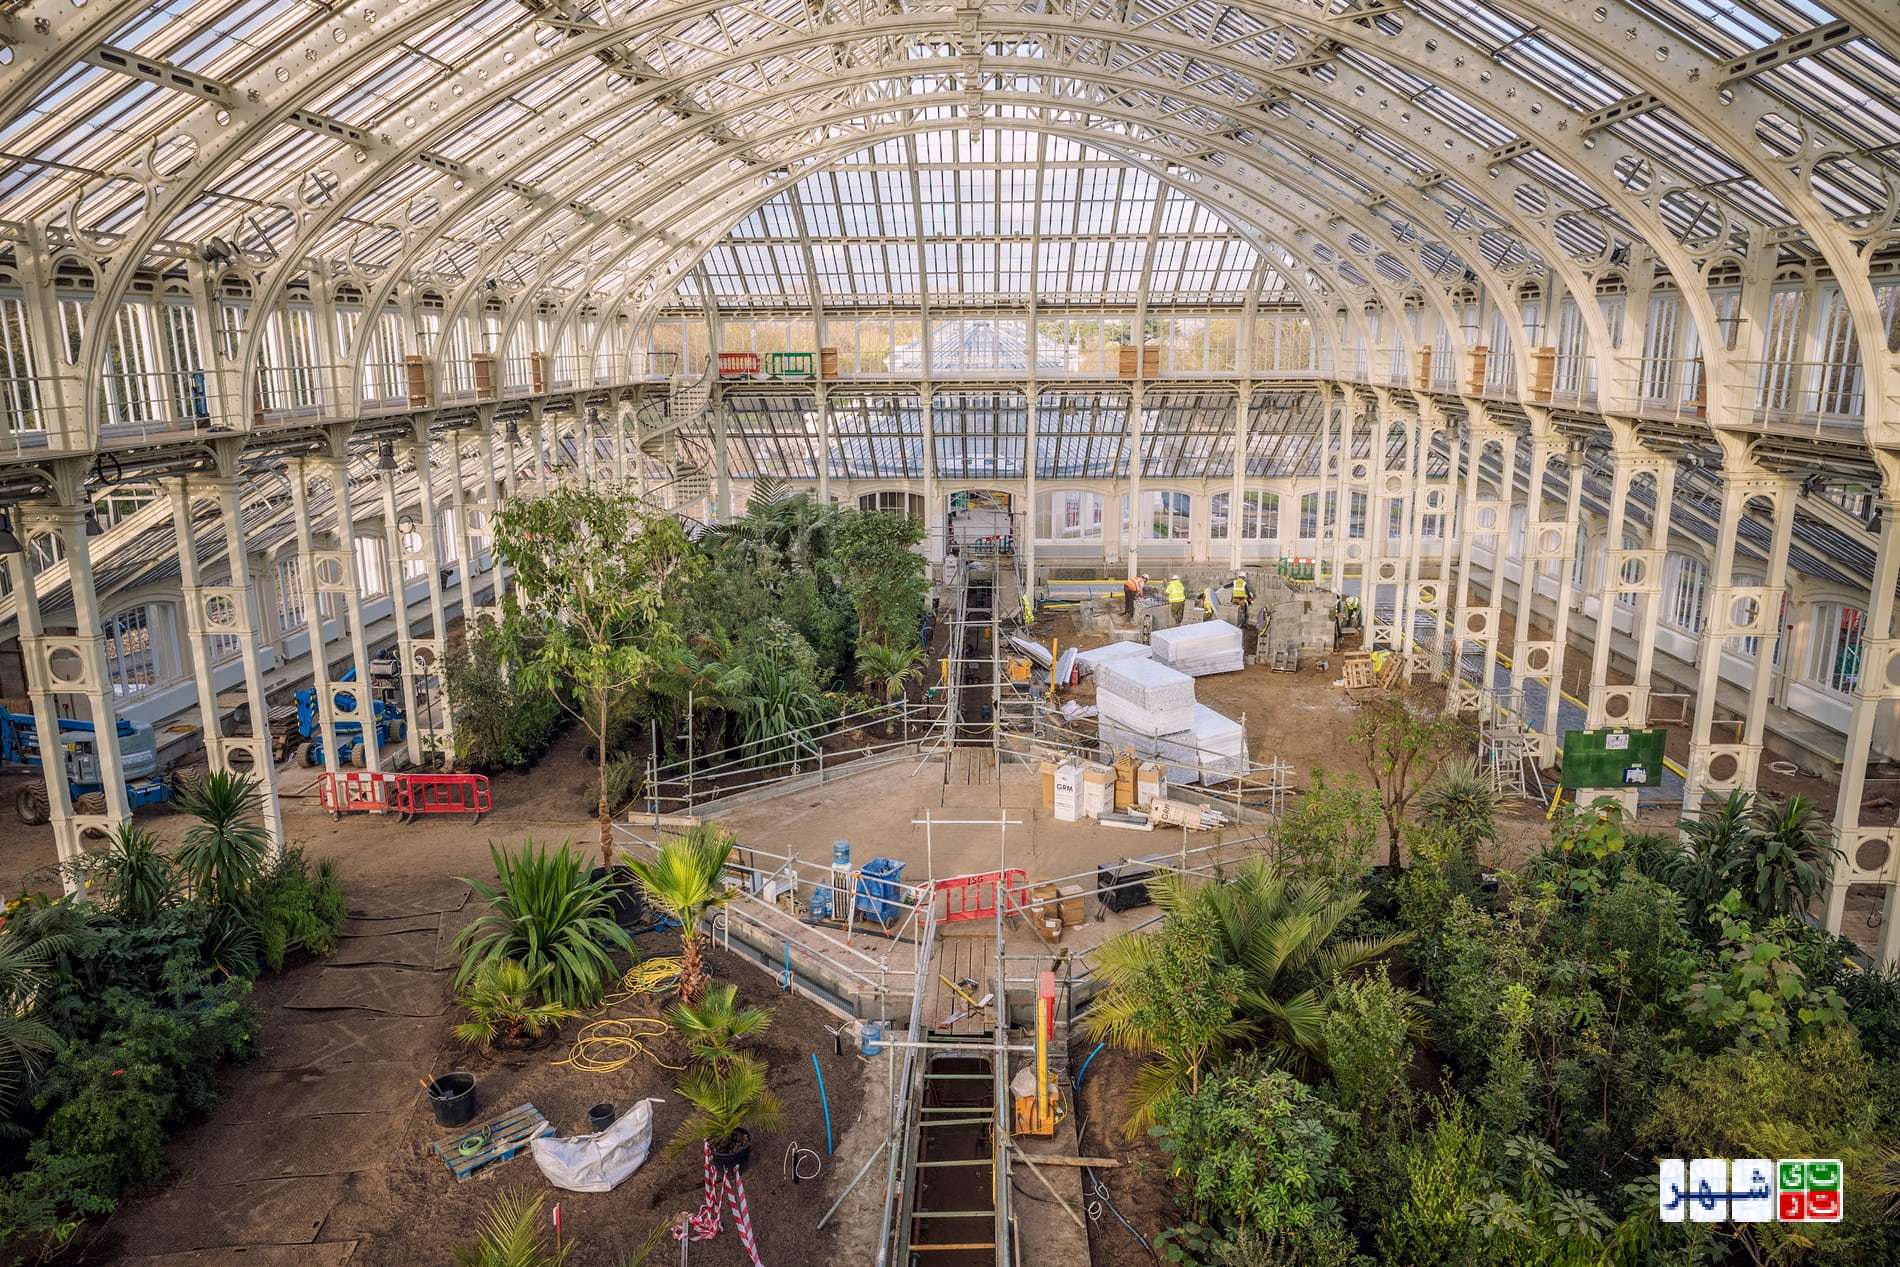 بازسازی باغ گیاه شناسیِ سلطنتیِ کیو/ بزرگترین بازمانده گلخانه ویکتوریا در جهان